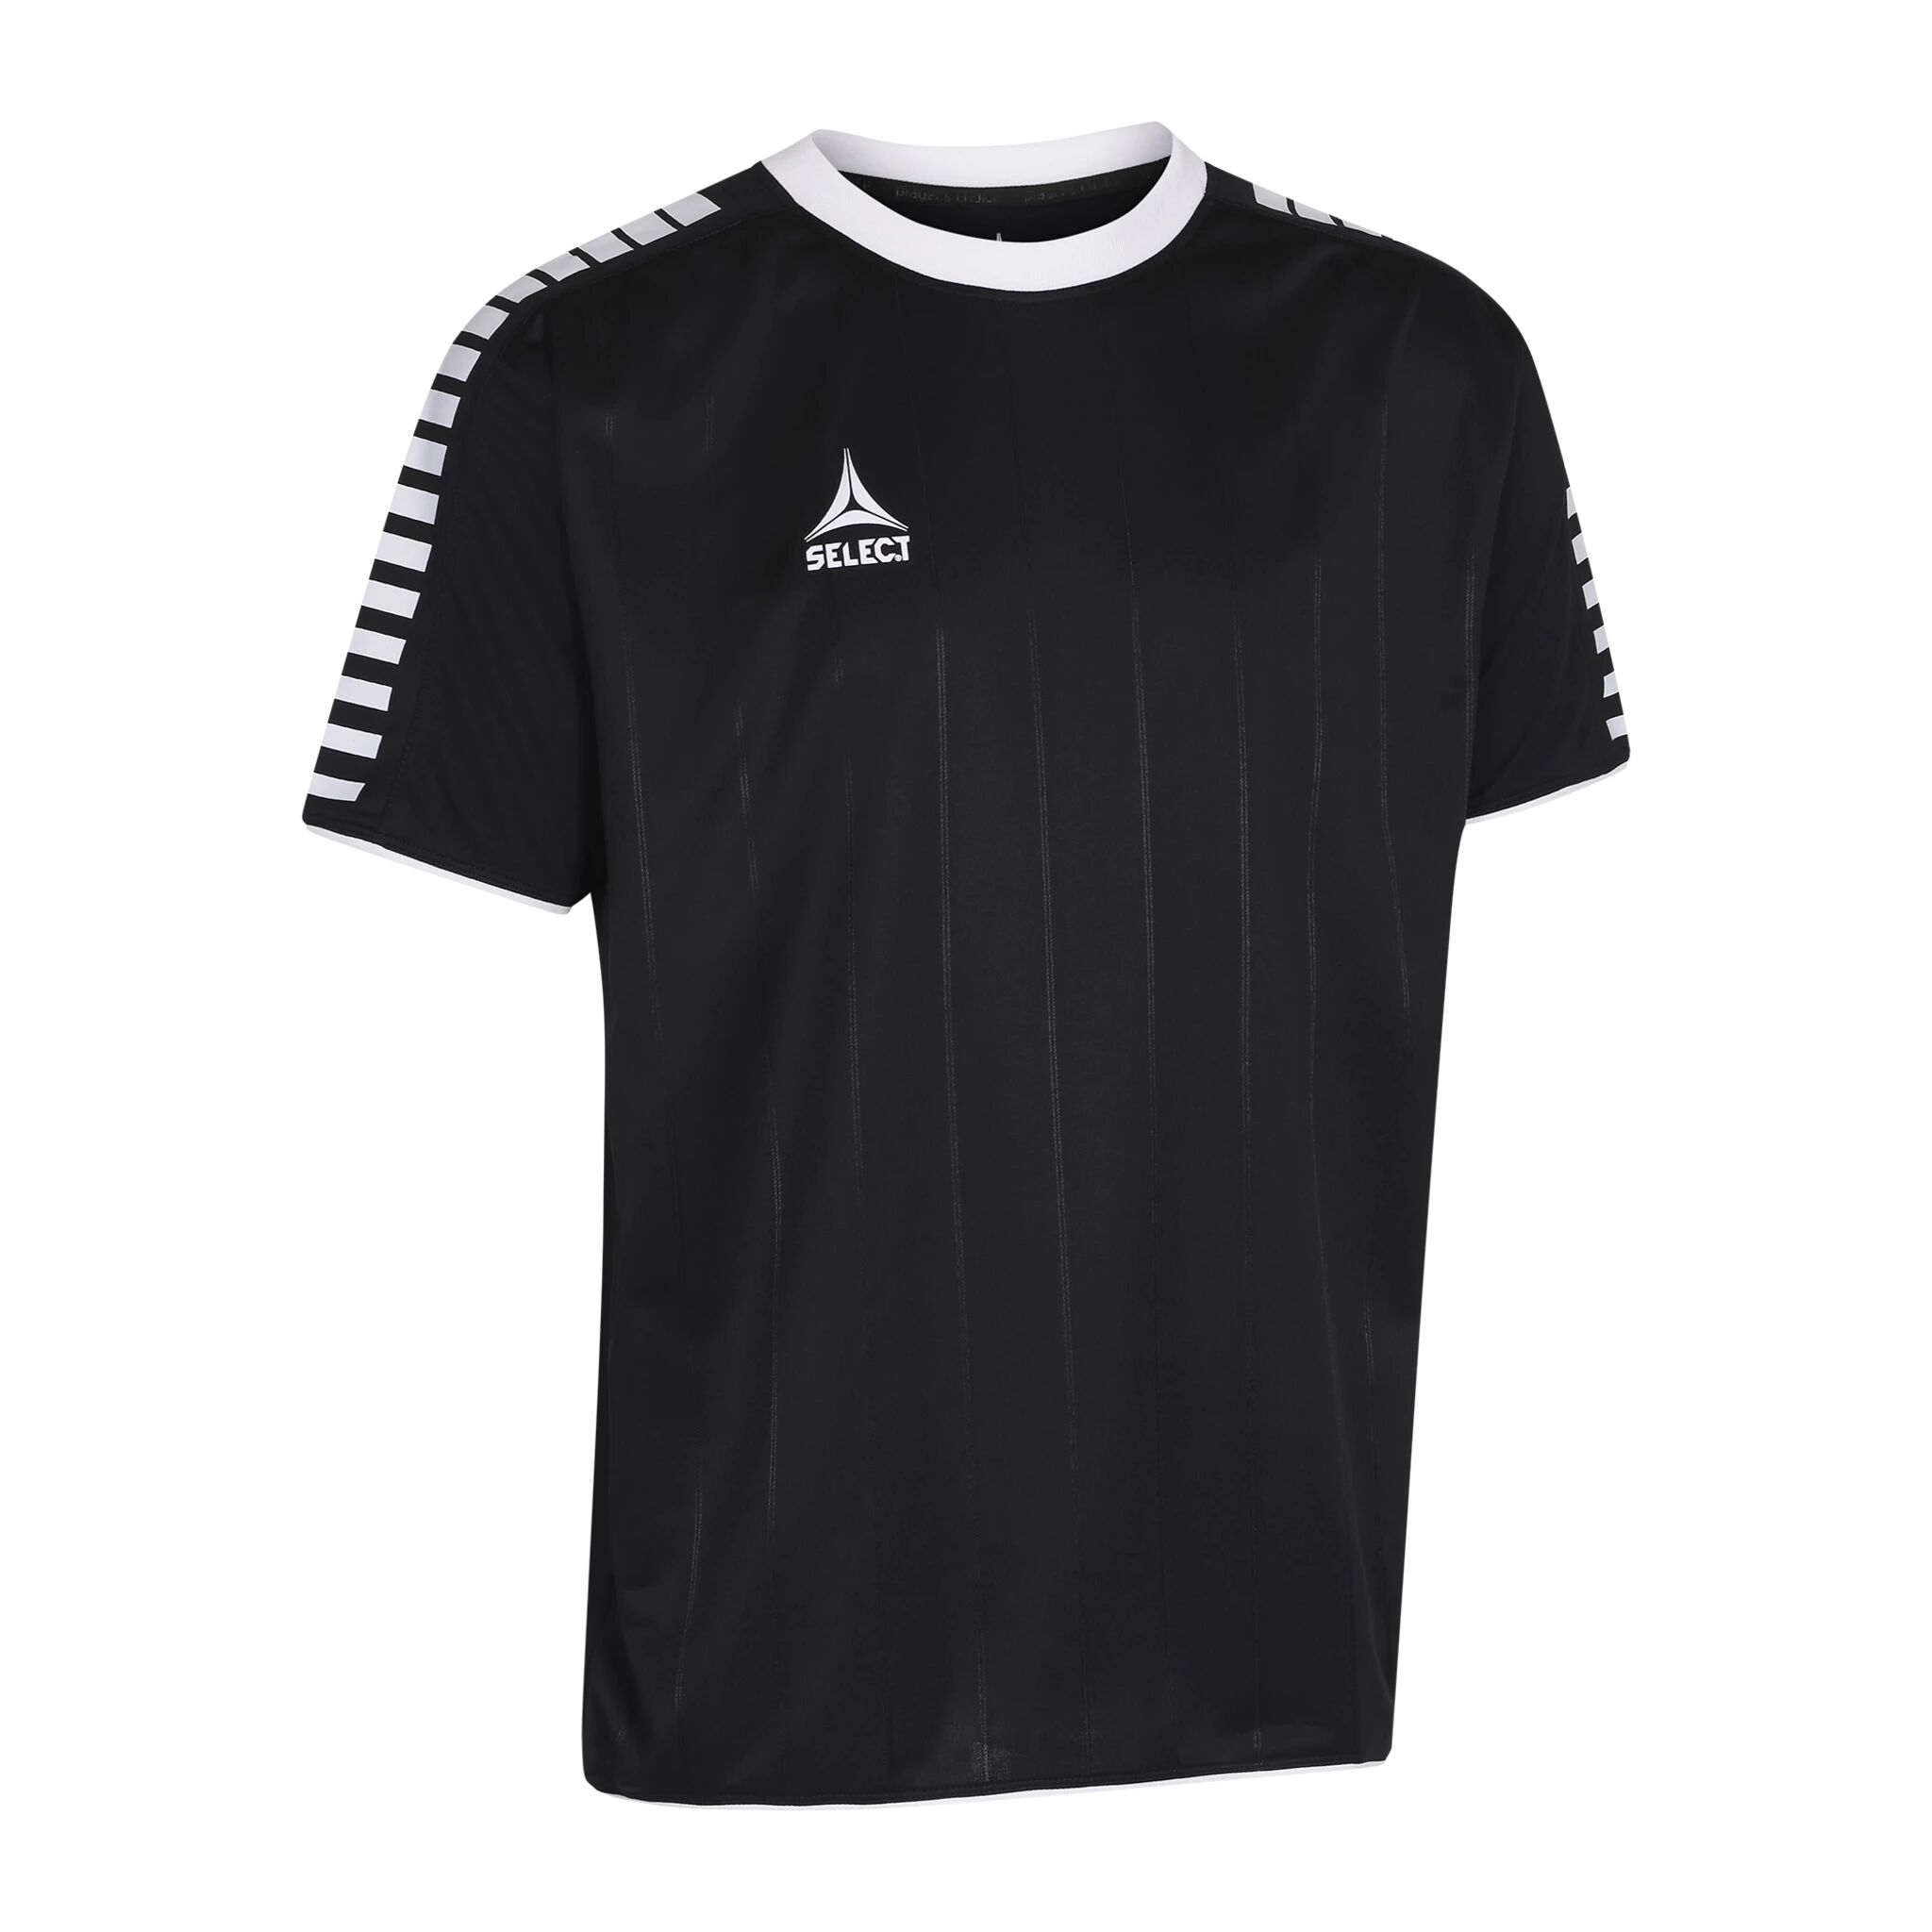 Select Player shirt S/S Argentina, fotballtrøye senior 152 BLACK